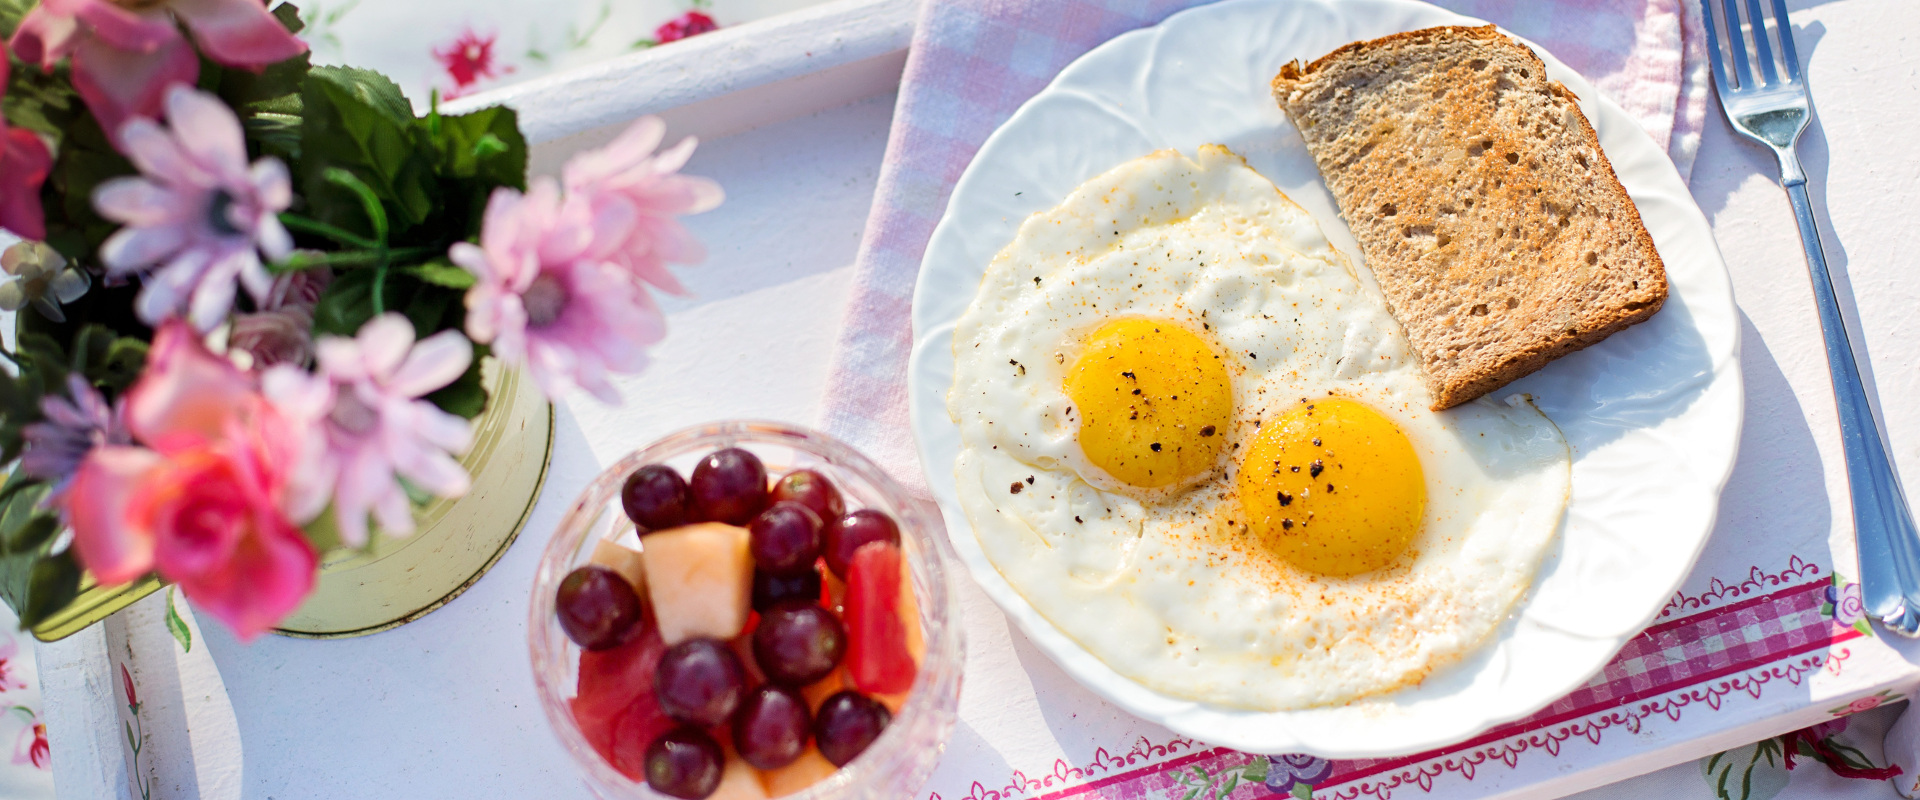 Foto: Frühstück mit Spiegeleiern